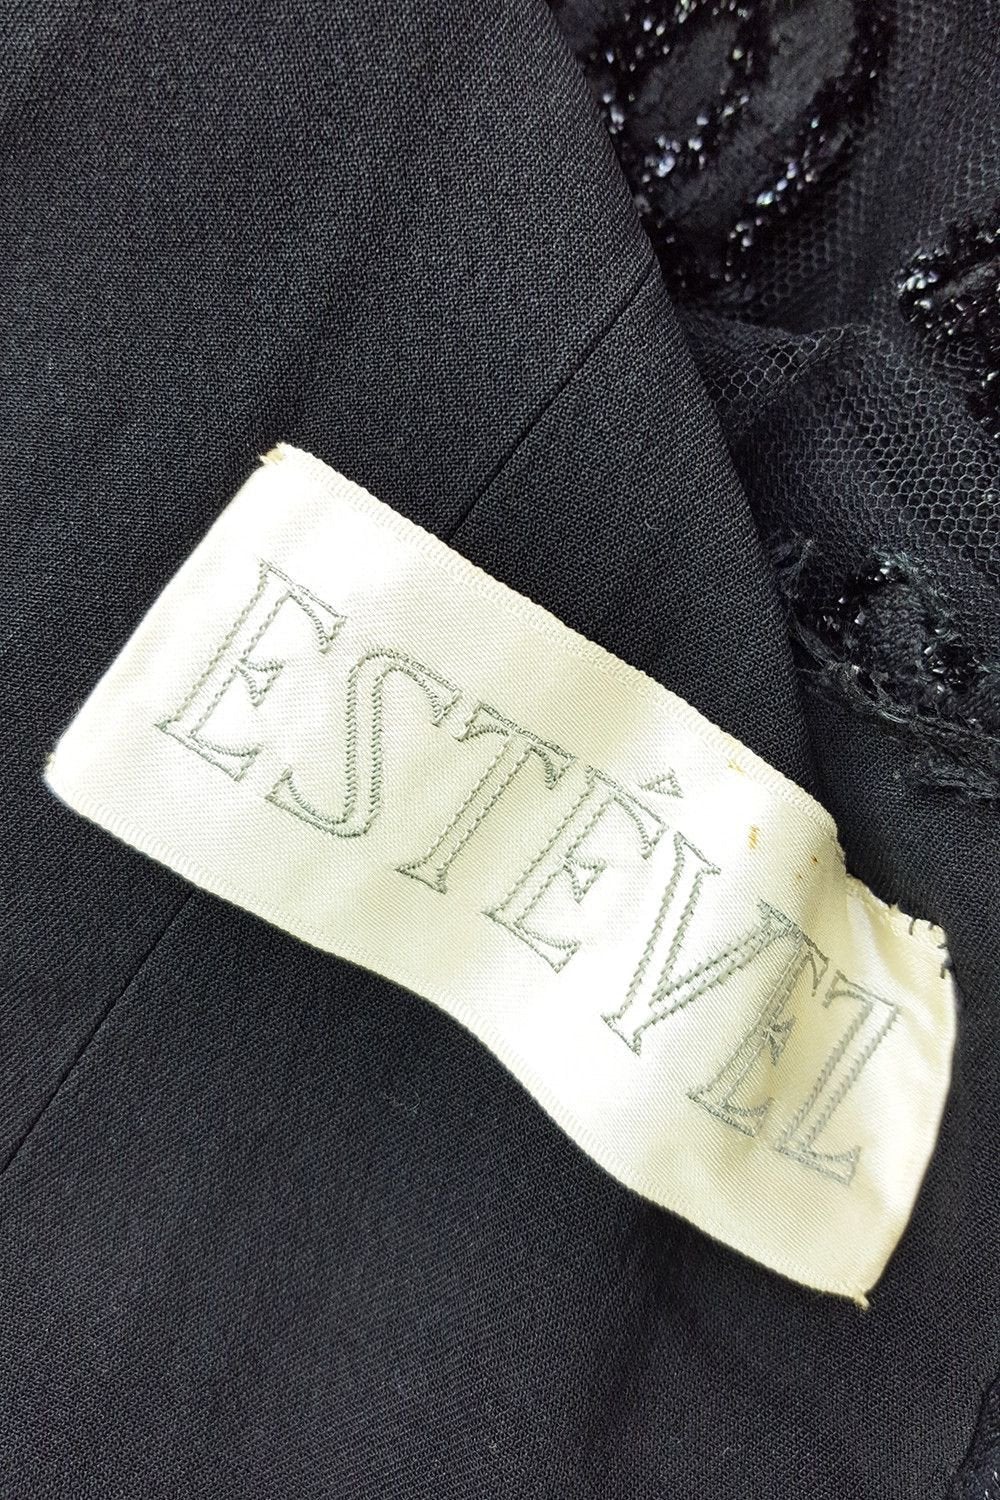 ESTEVEZ Vintage Lace Overlay Black Evening Dress (UK 8)-Estévez-The Freperie